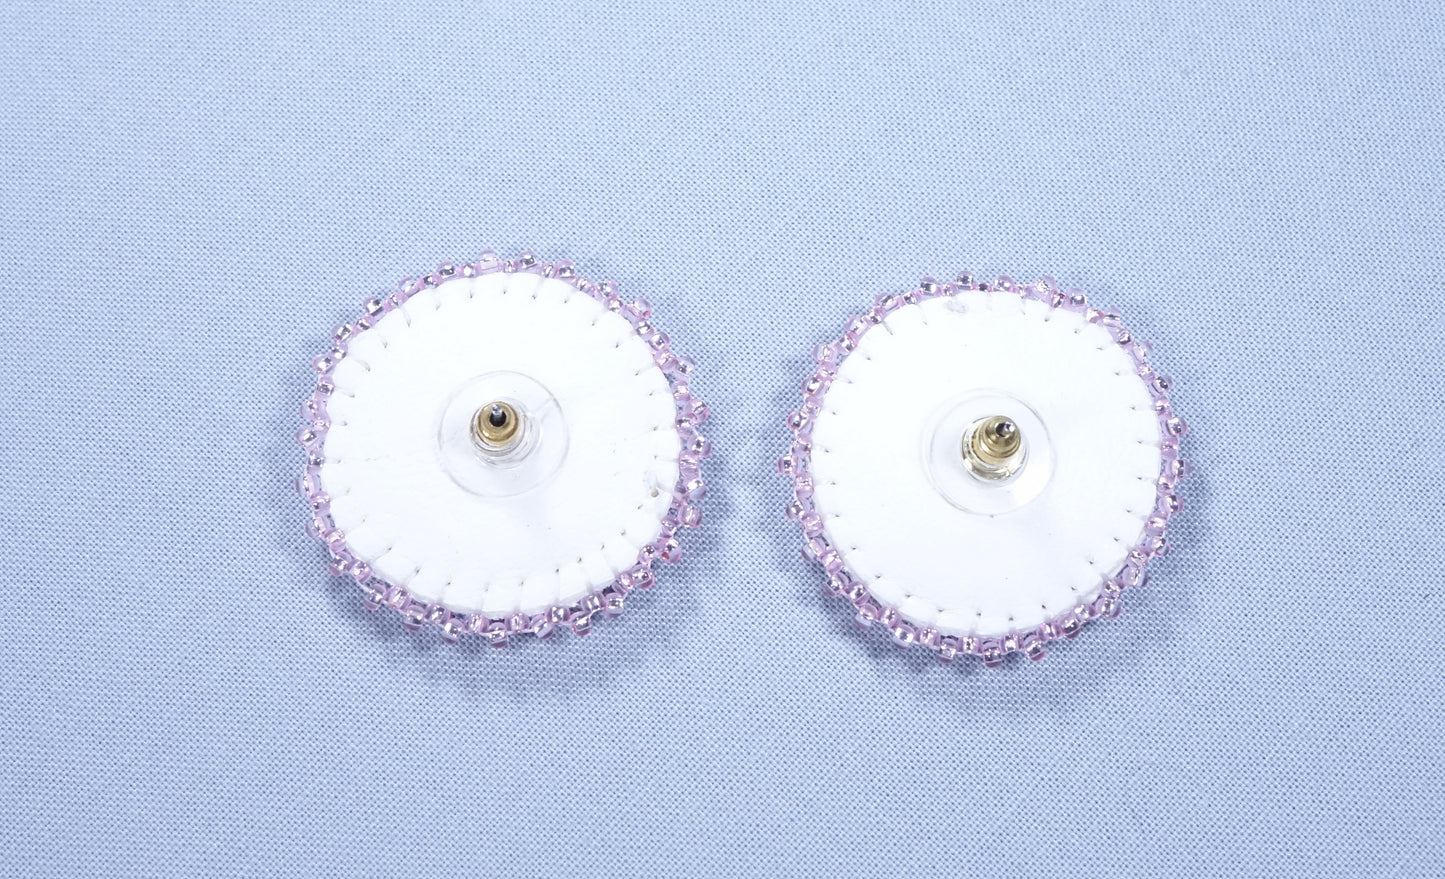 Beaded Rosette Earrings 1.5 inch